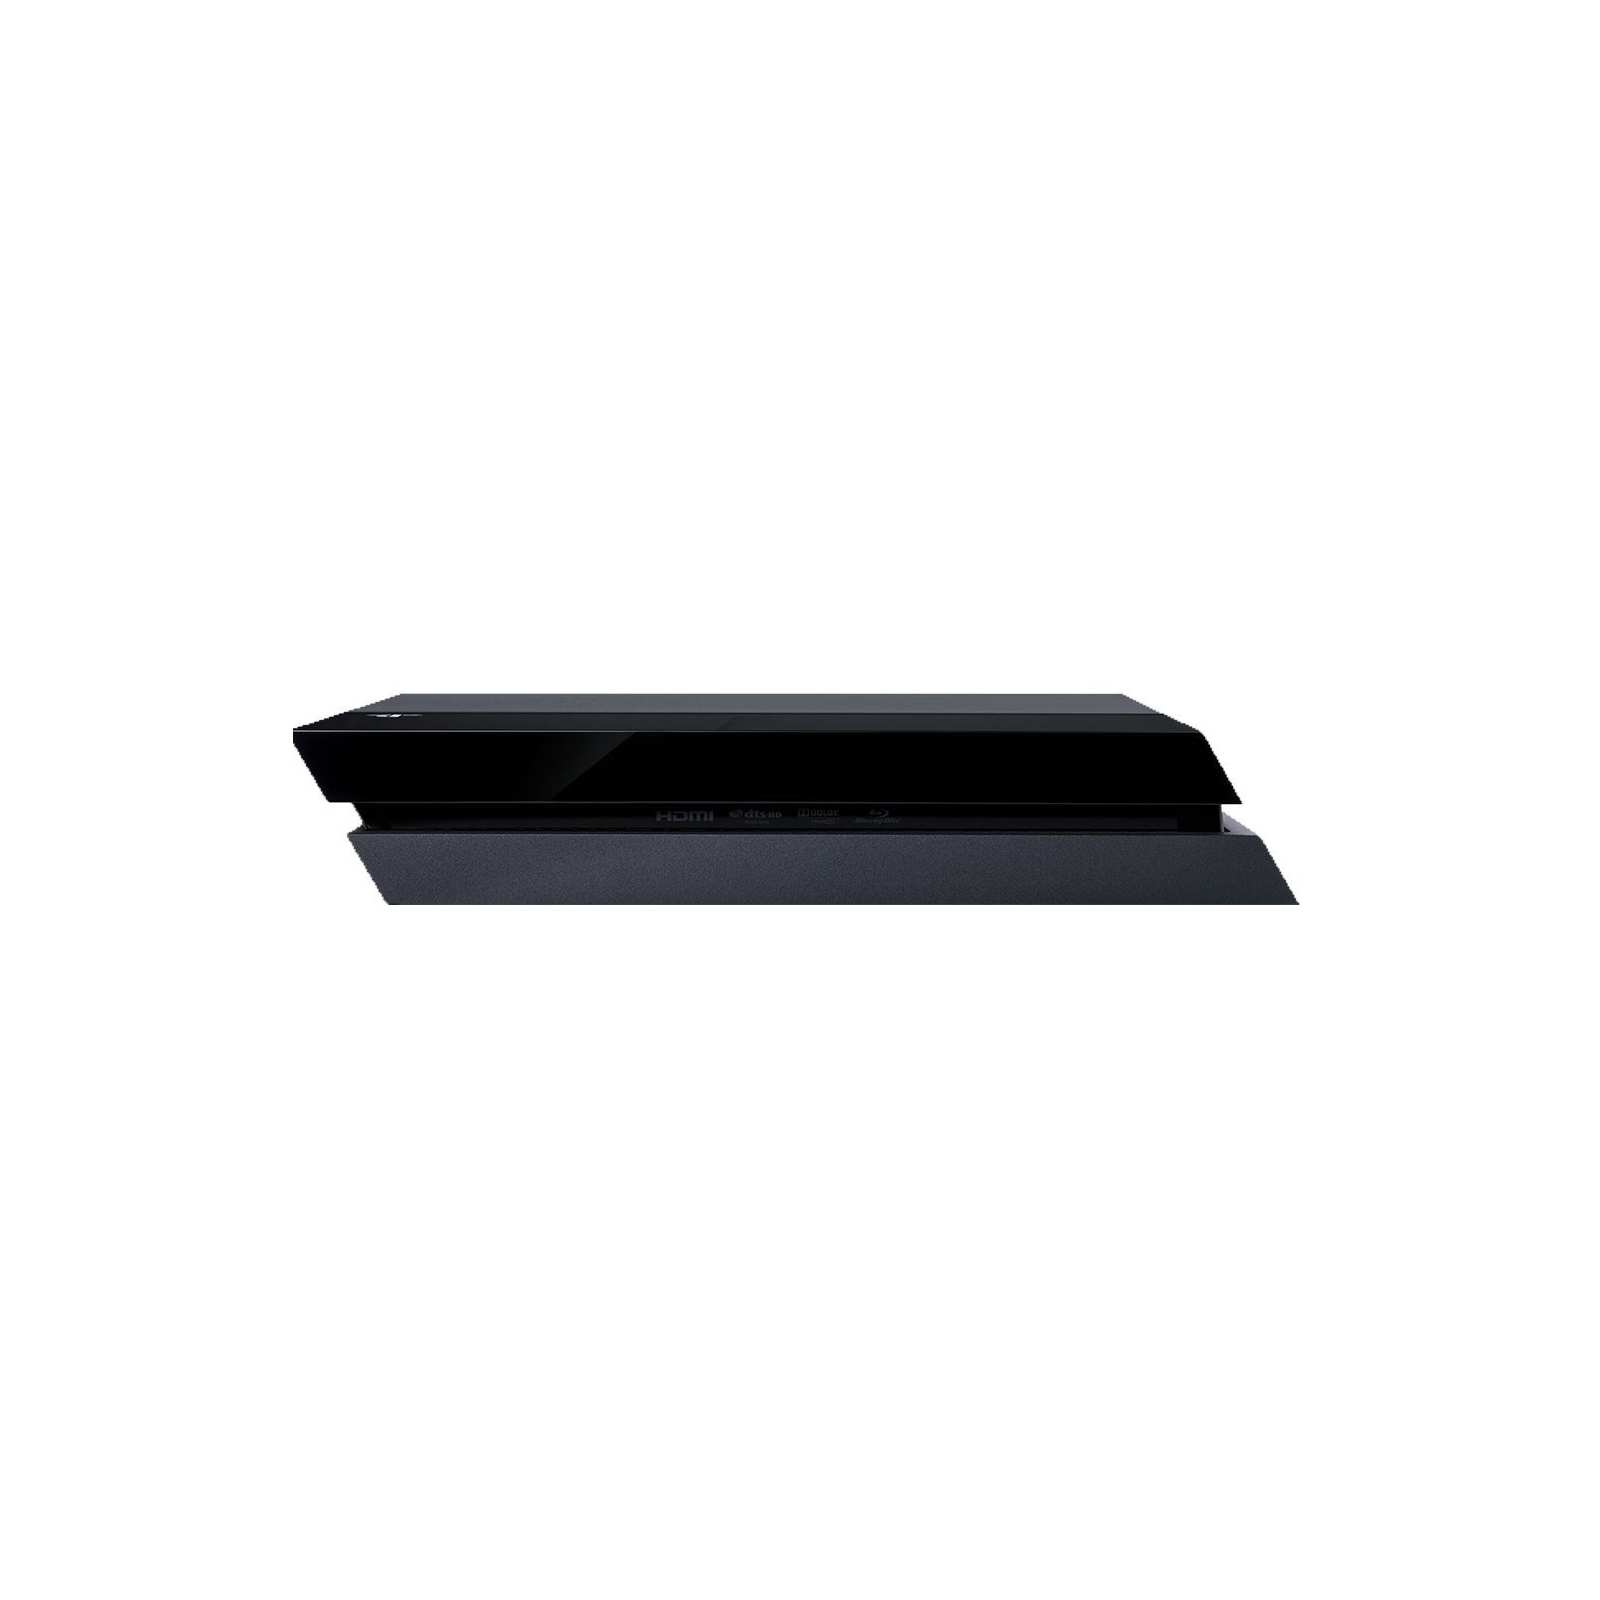 Игровая консоль Sony PlayStation 4 Pro 1TB (Fortnite) (9941507) изображение 4